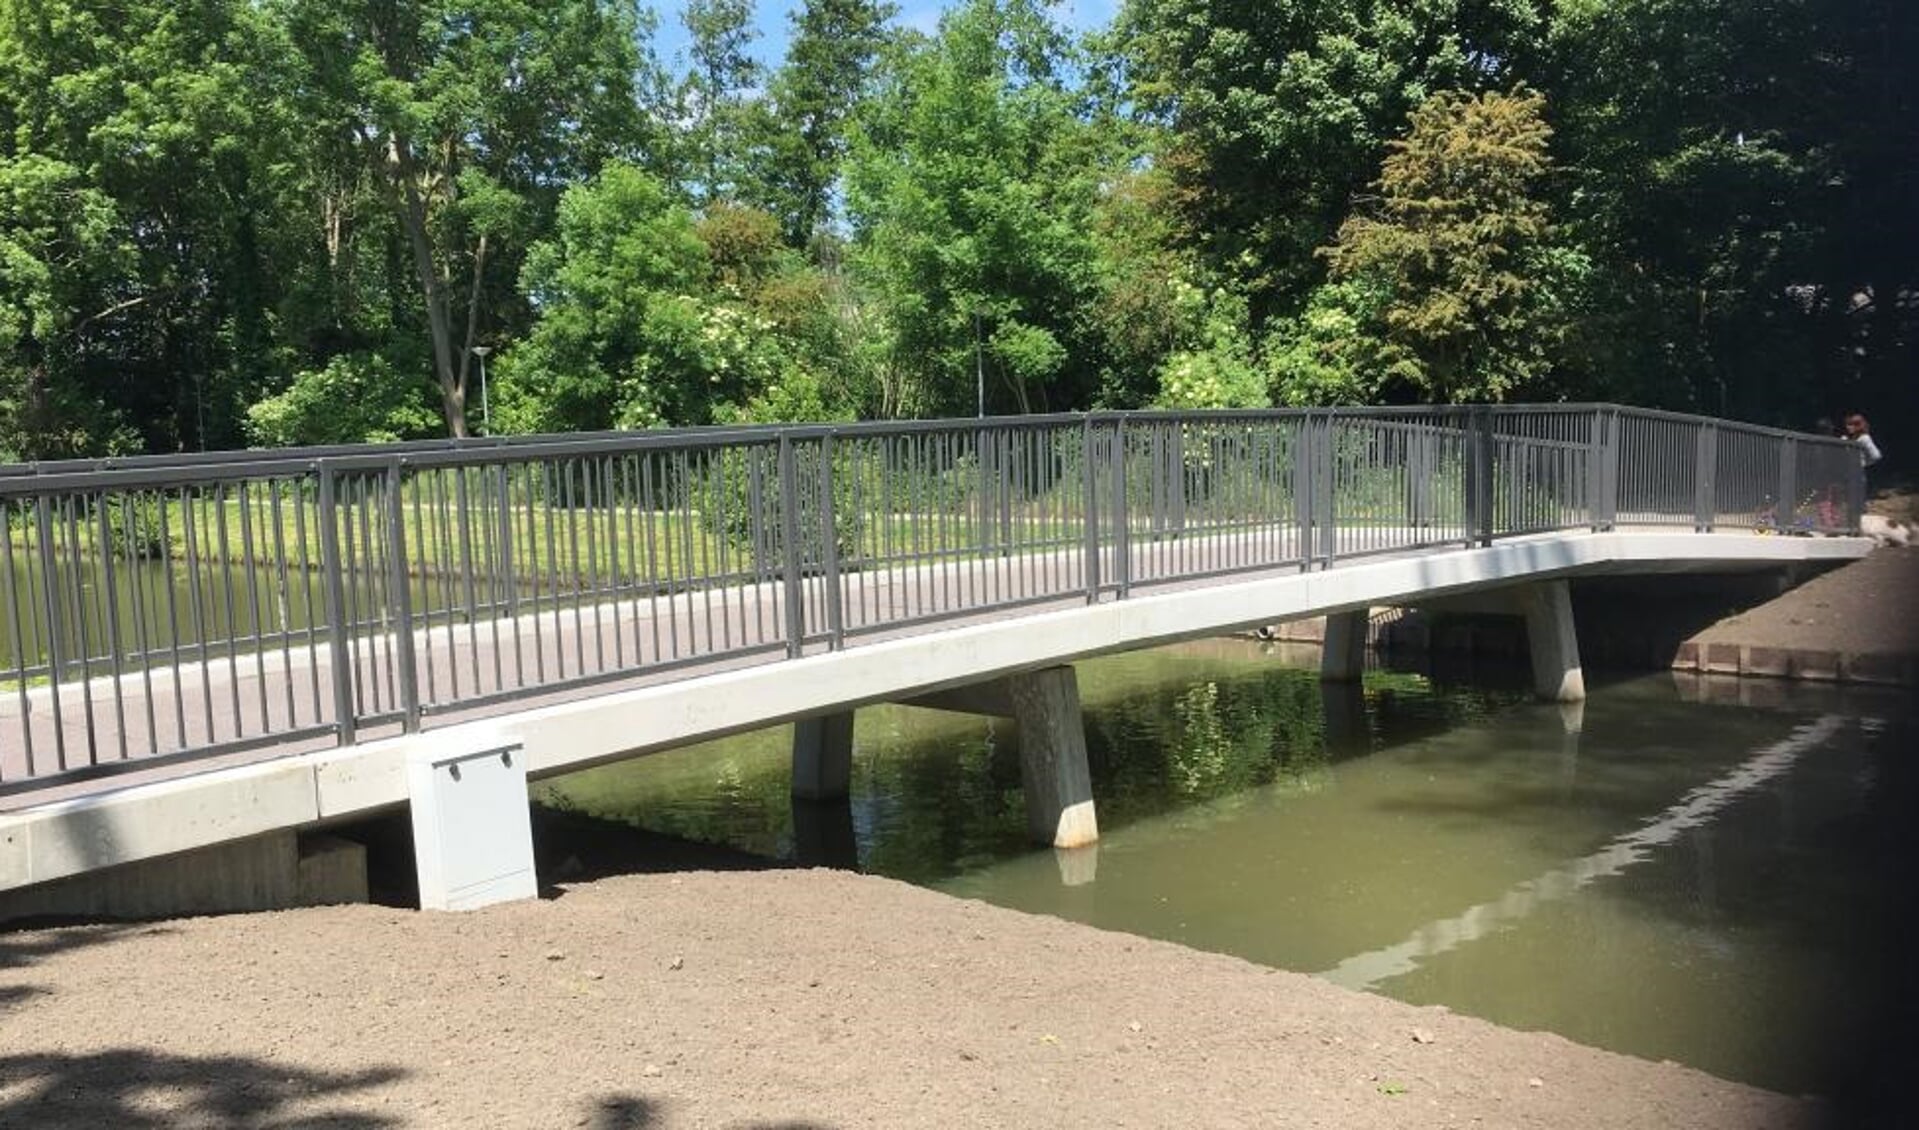 We hebben een nieuwe brug in de stad. In Hoogvliet, aan de Botreep, is vandaag (vrijdag 9 juni) een circulaire brug geopend. Foto: Gemeente Rotterdam